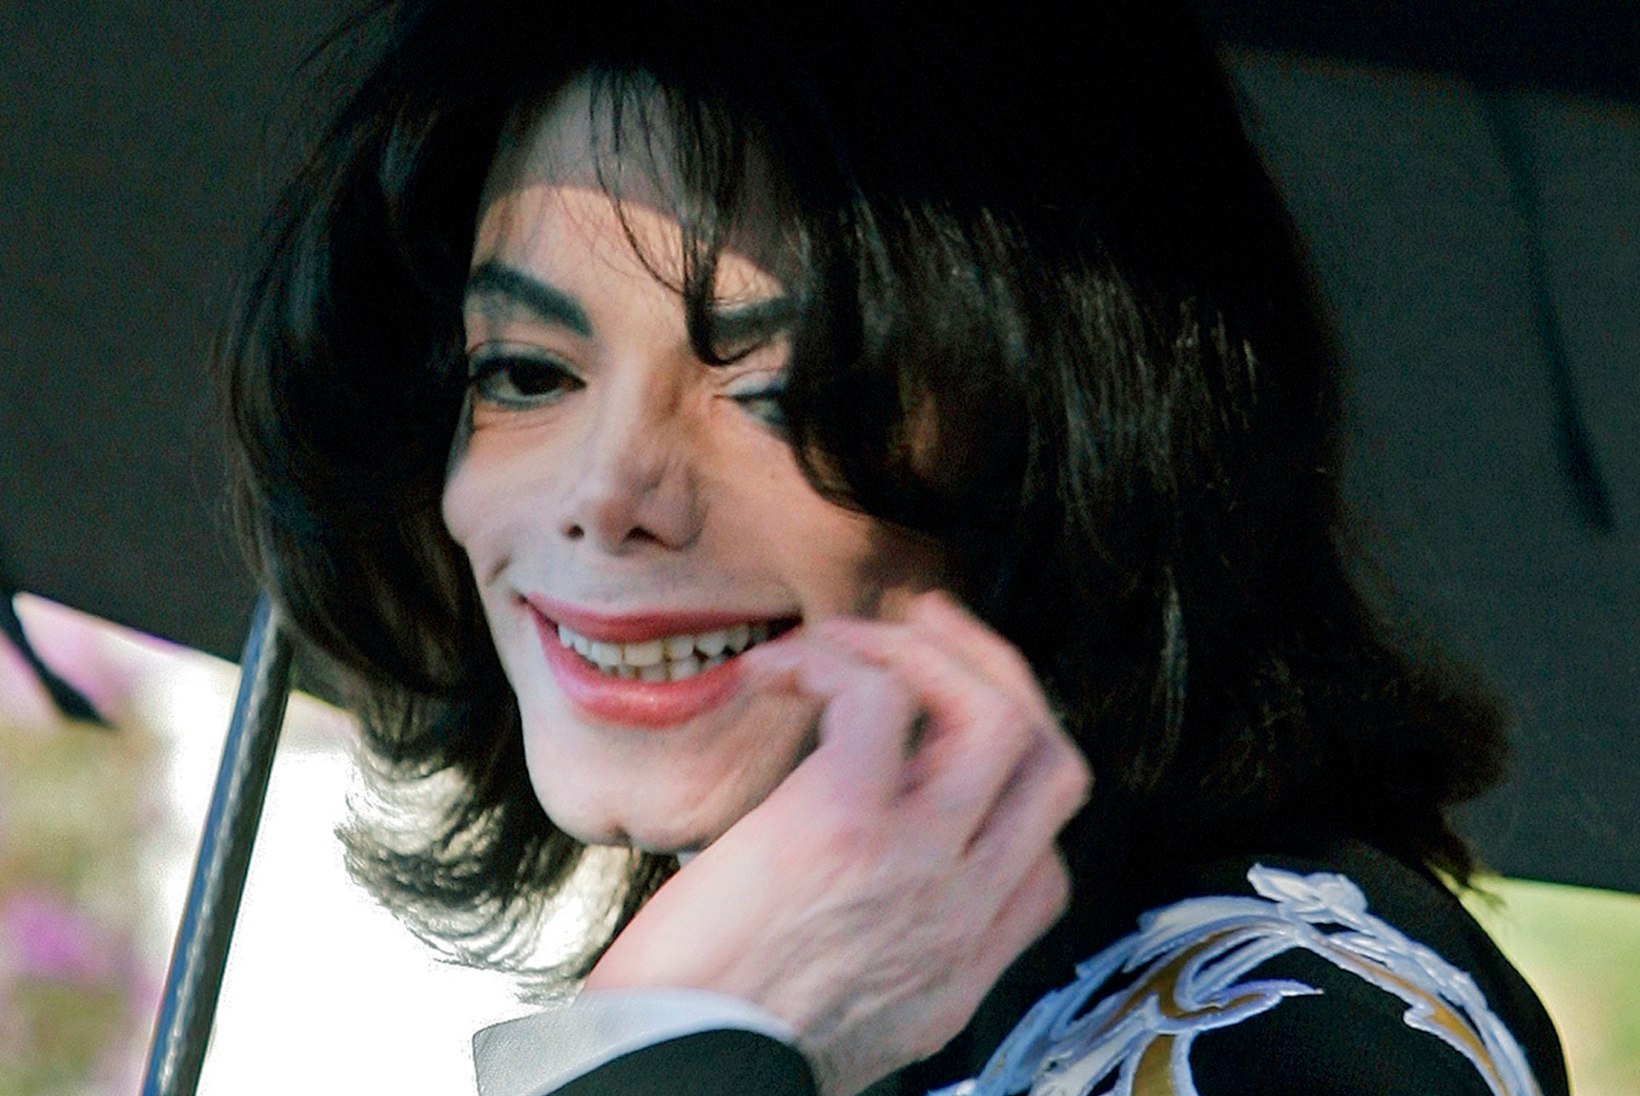 Eestis esilinastus šokeeriv dokumentaalfilm popikuninga Michael Jacksoni lapsepilastamistest